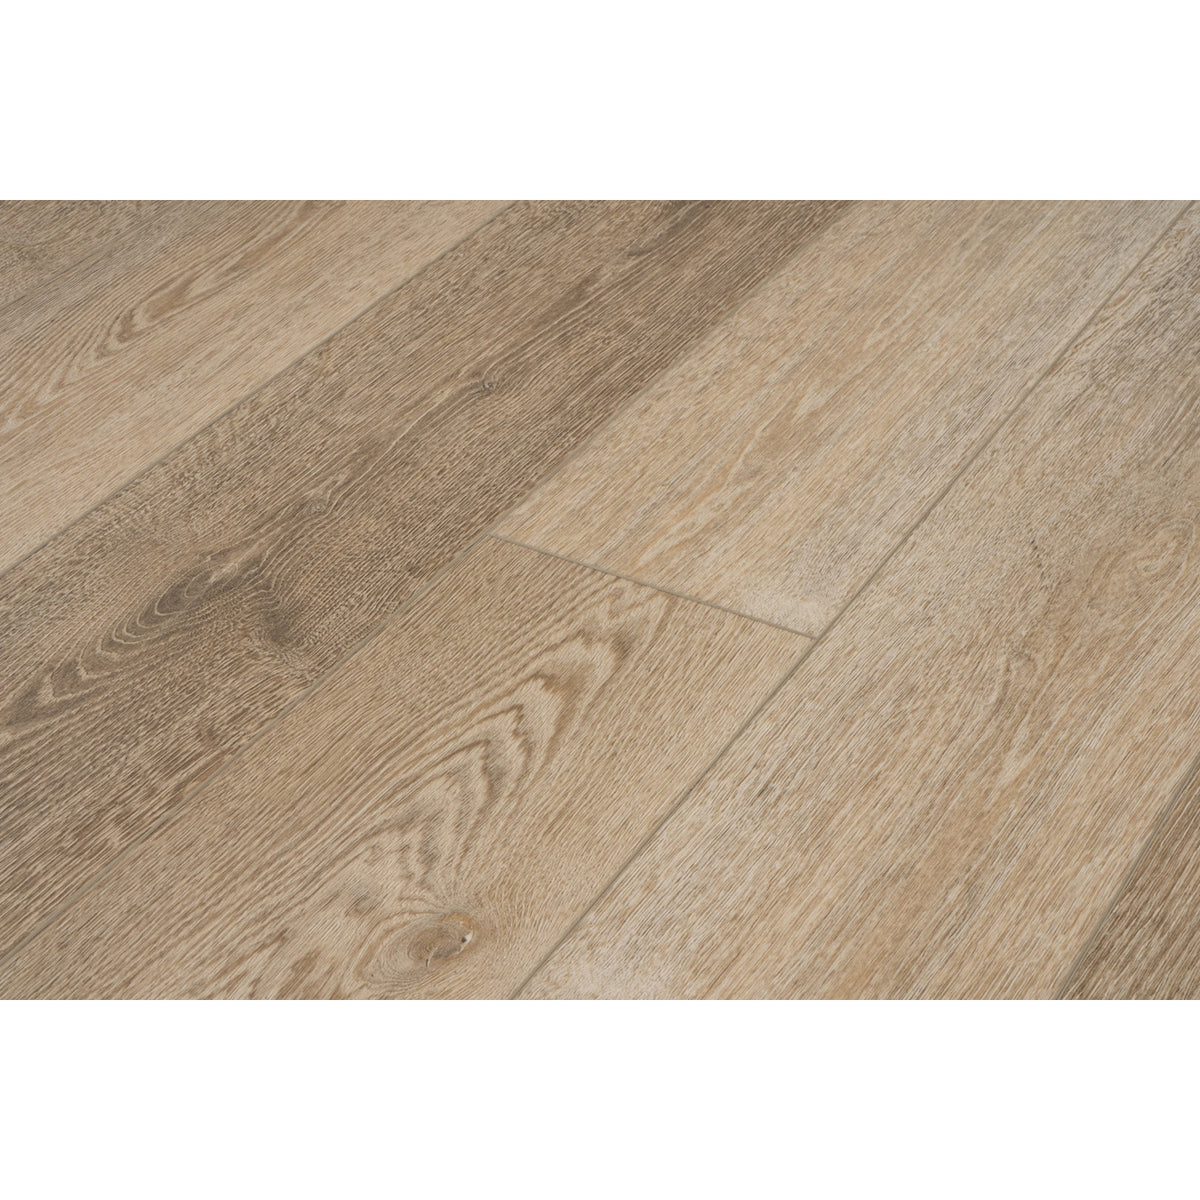 Provenza Floors - Concorde Oak Luxury Vinyl Plank - Spellbound